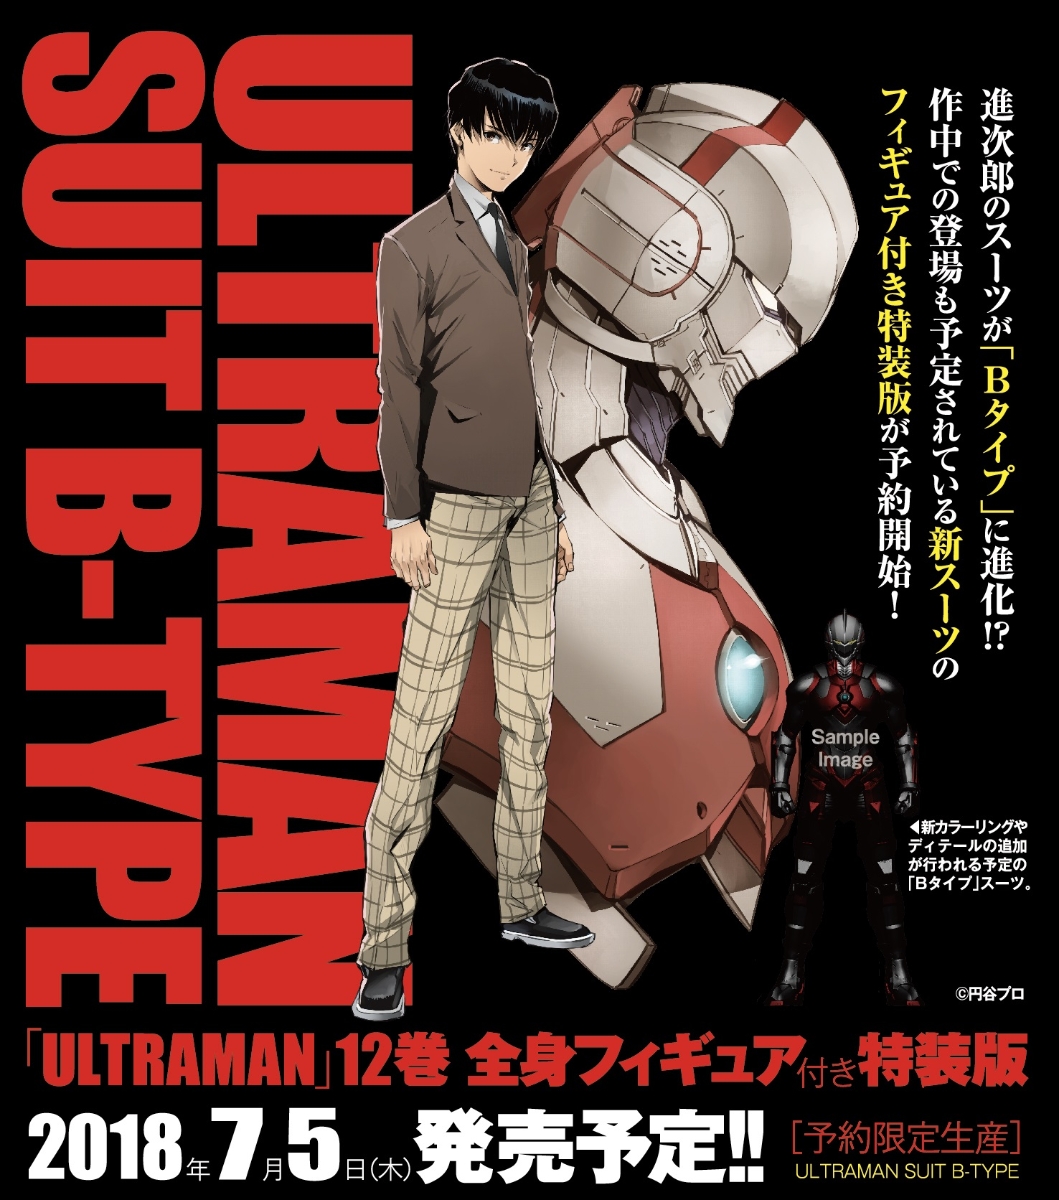 楽天ブックス Ultraman 12 特装版 フィギュア付限定特装版 清水栄一 漫画家 本